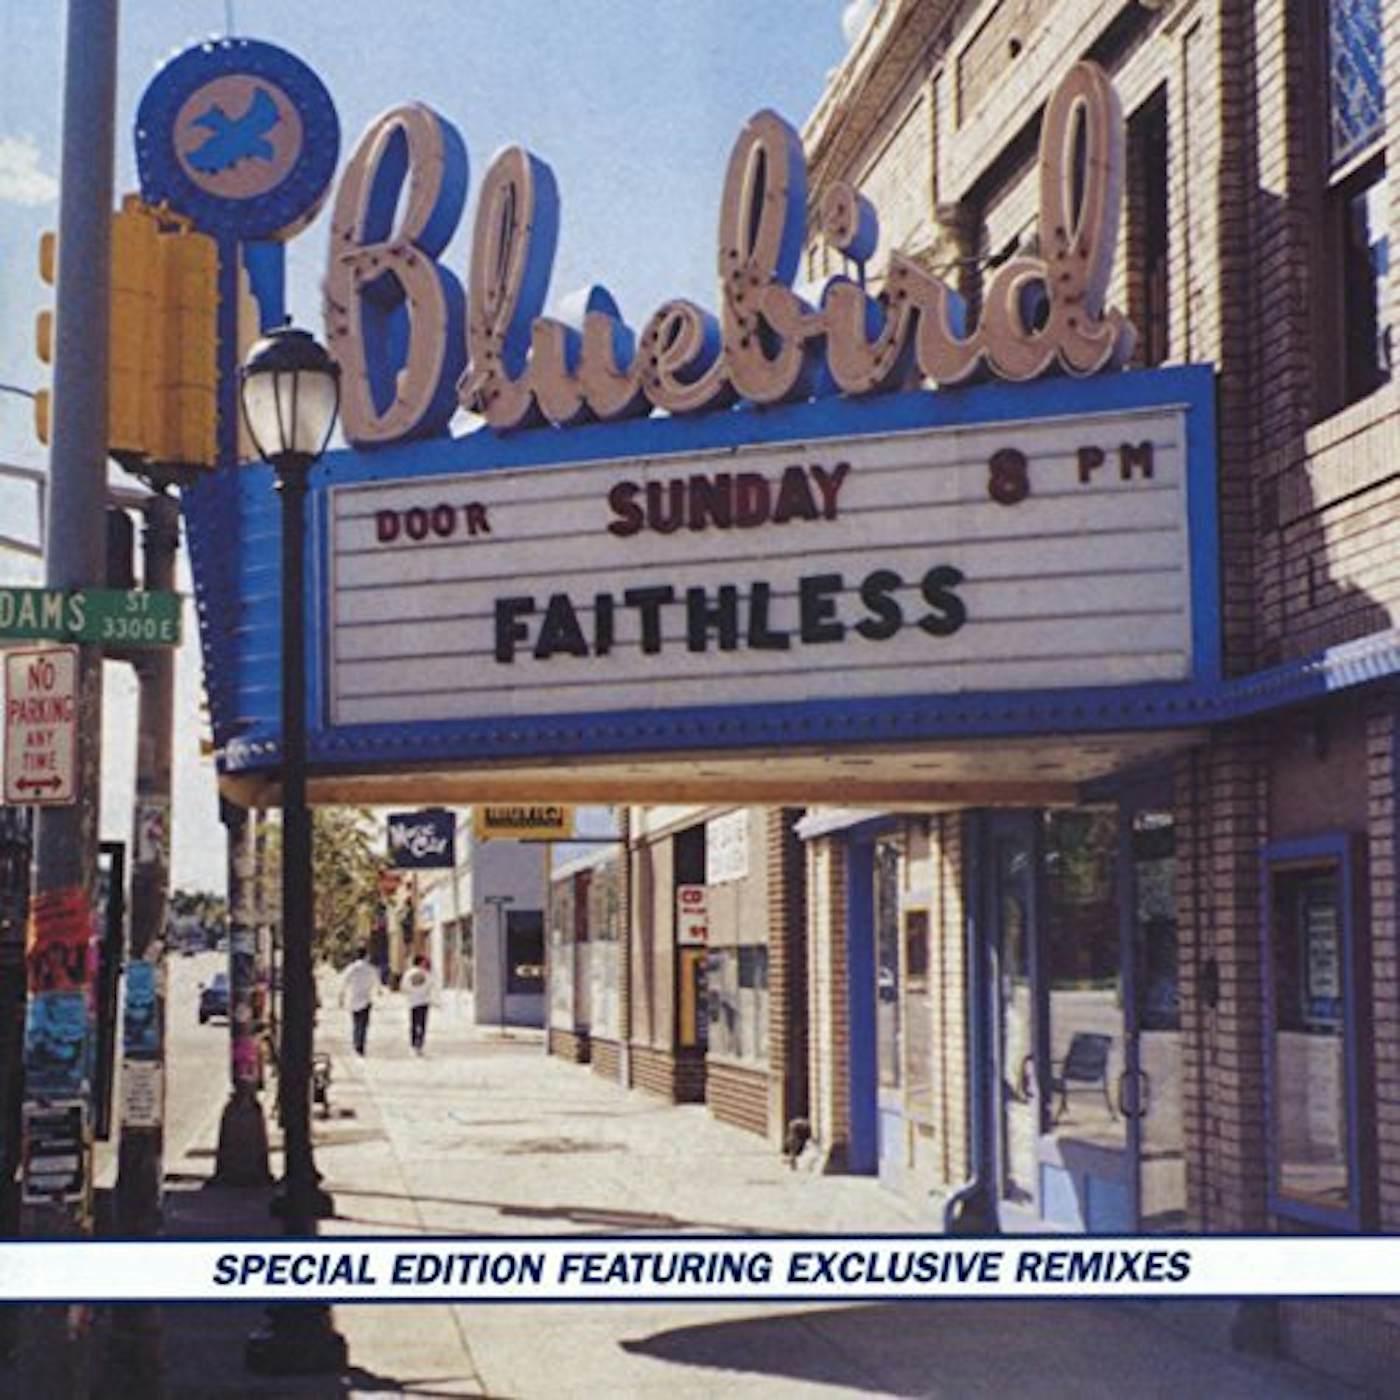 Faithless SUNDAY 8PM CD